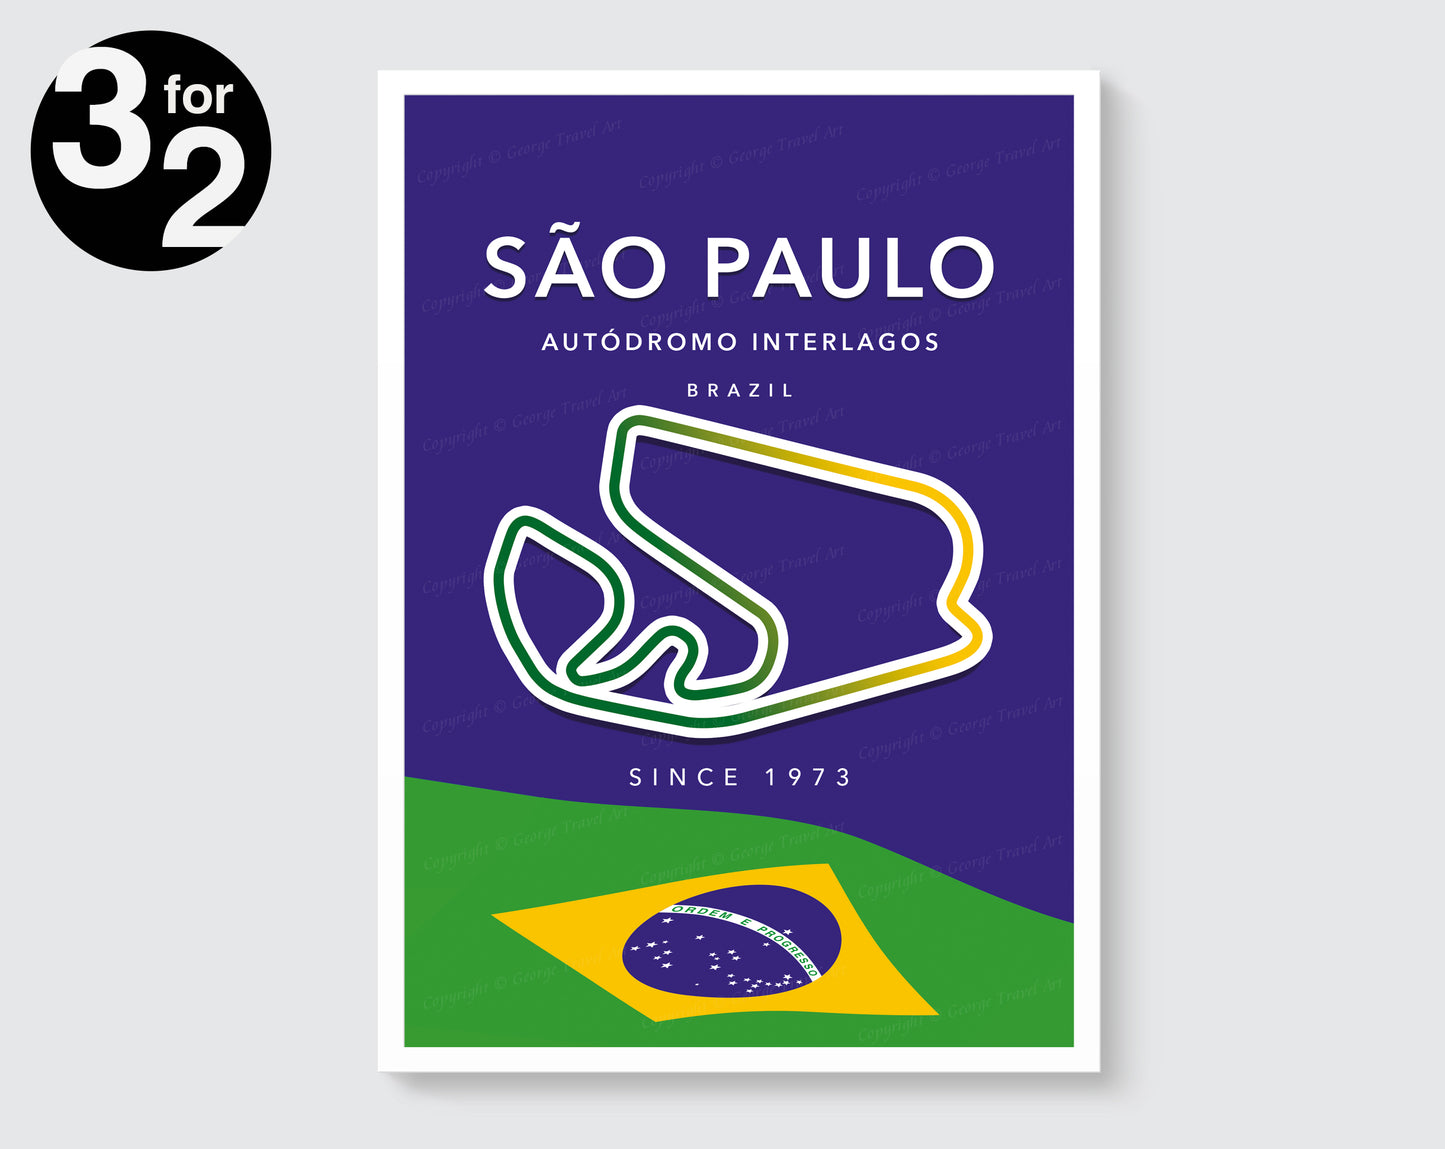 Sao Paulo F1 Circuit Poster / Autódromo José Carlos Interlagos Print